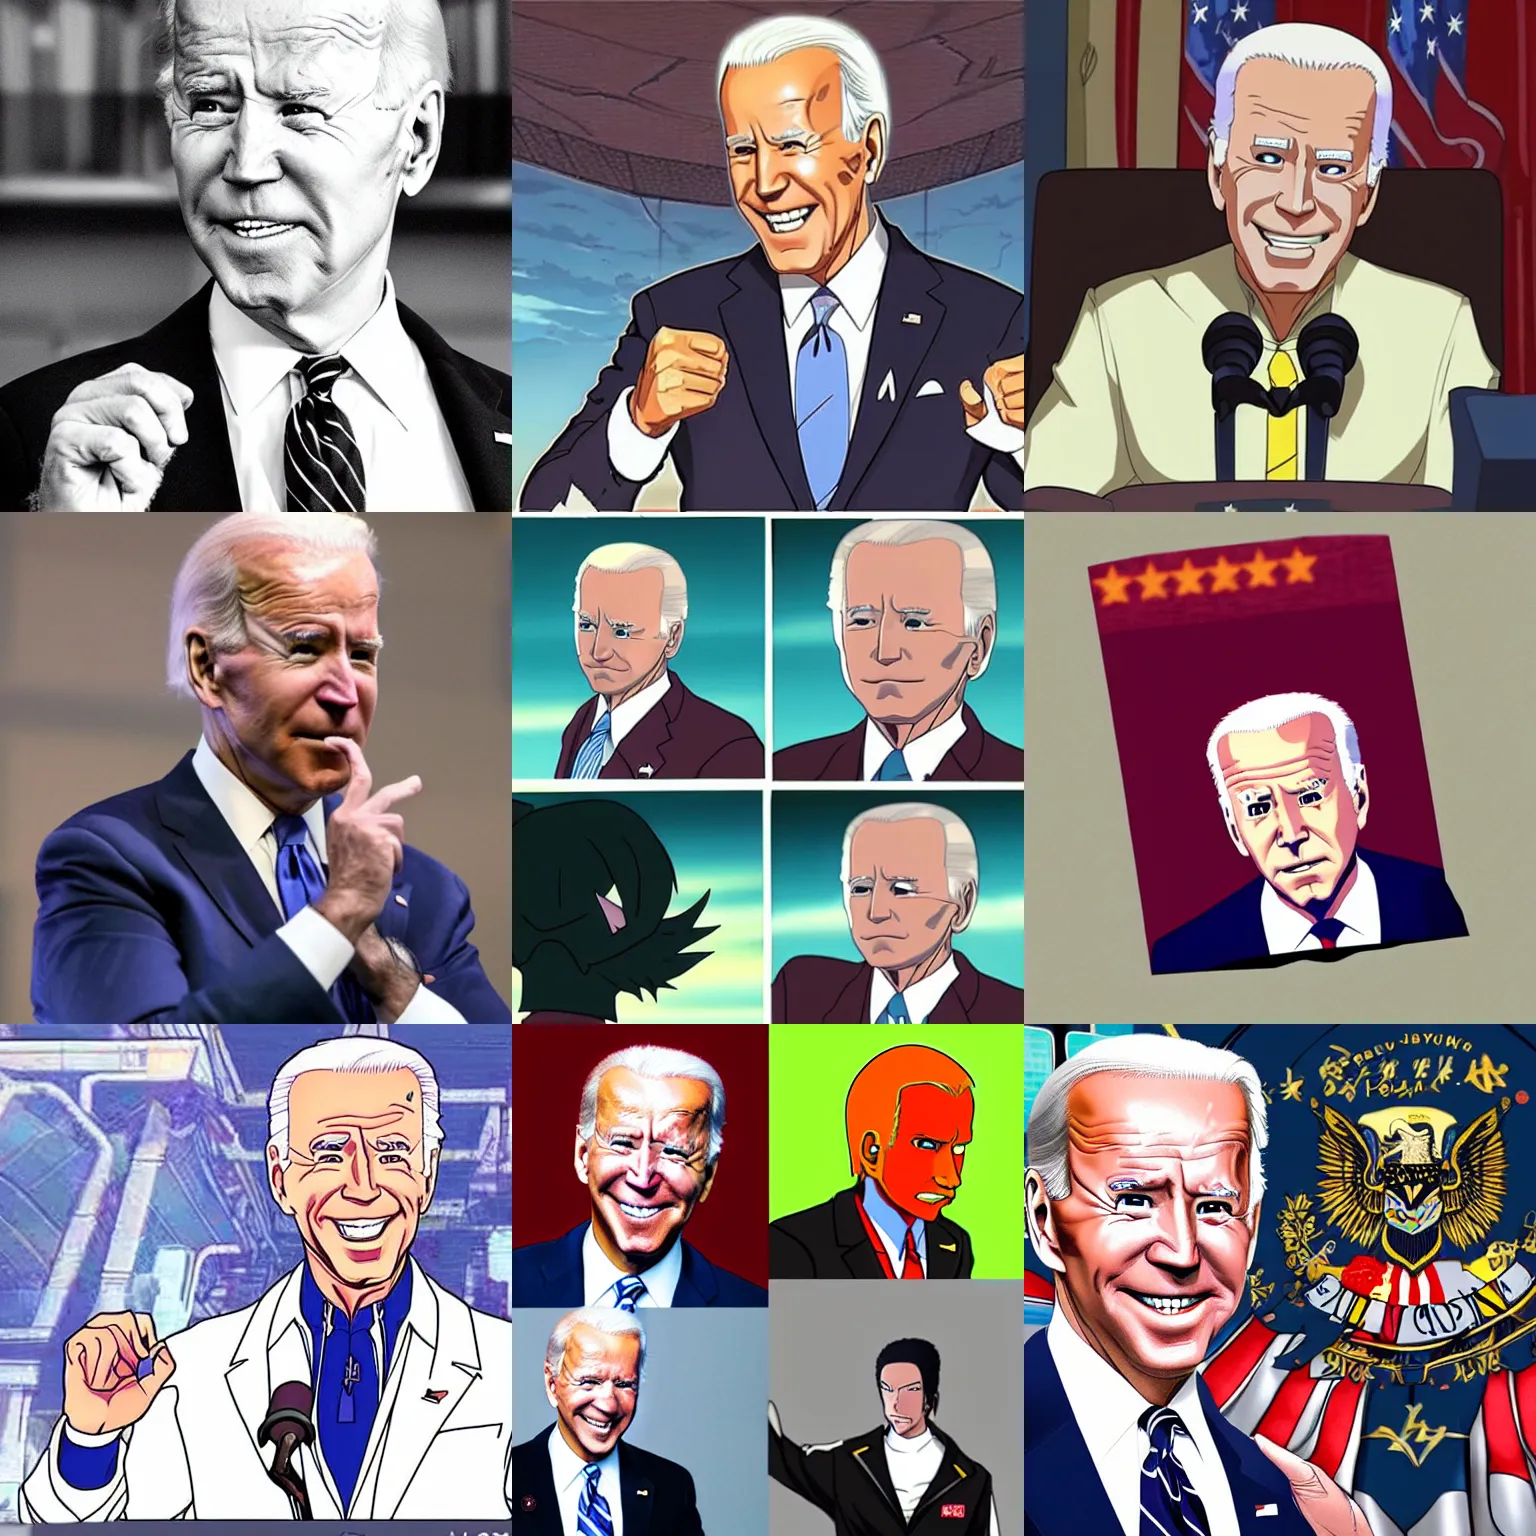 Prompt: Joe Biden as an anime villain